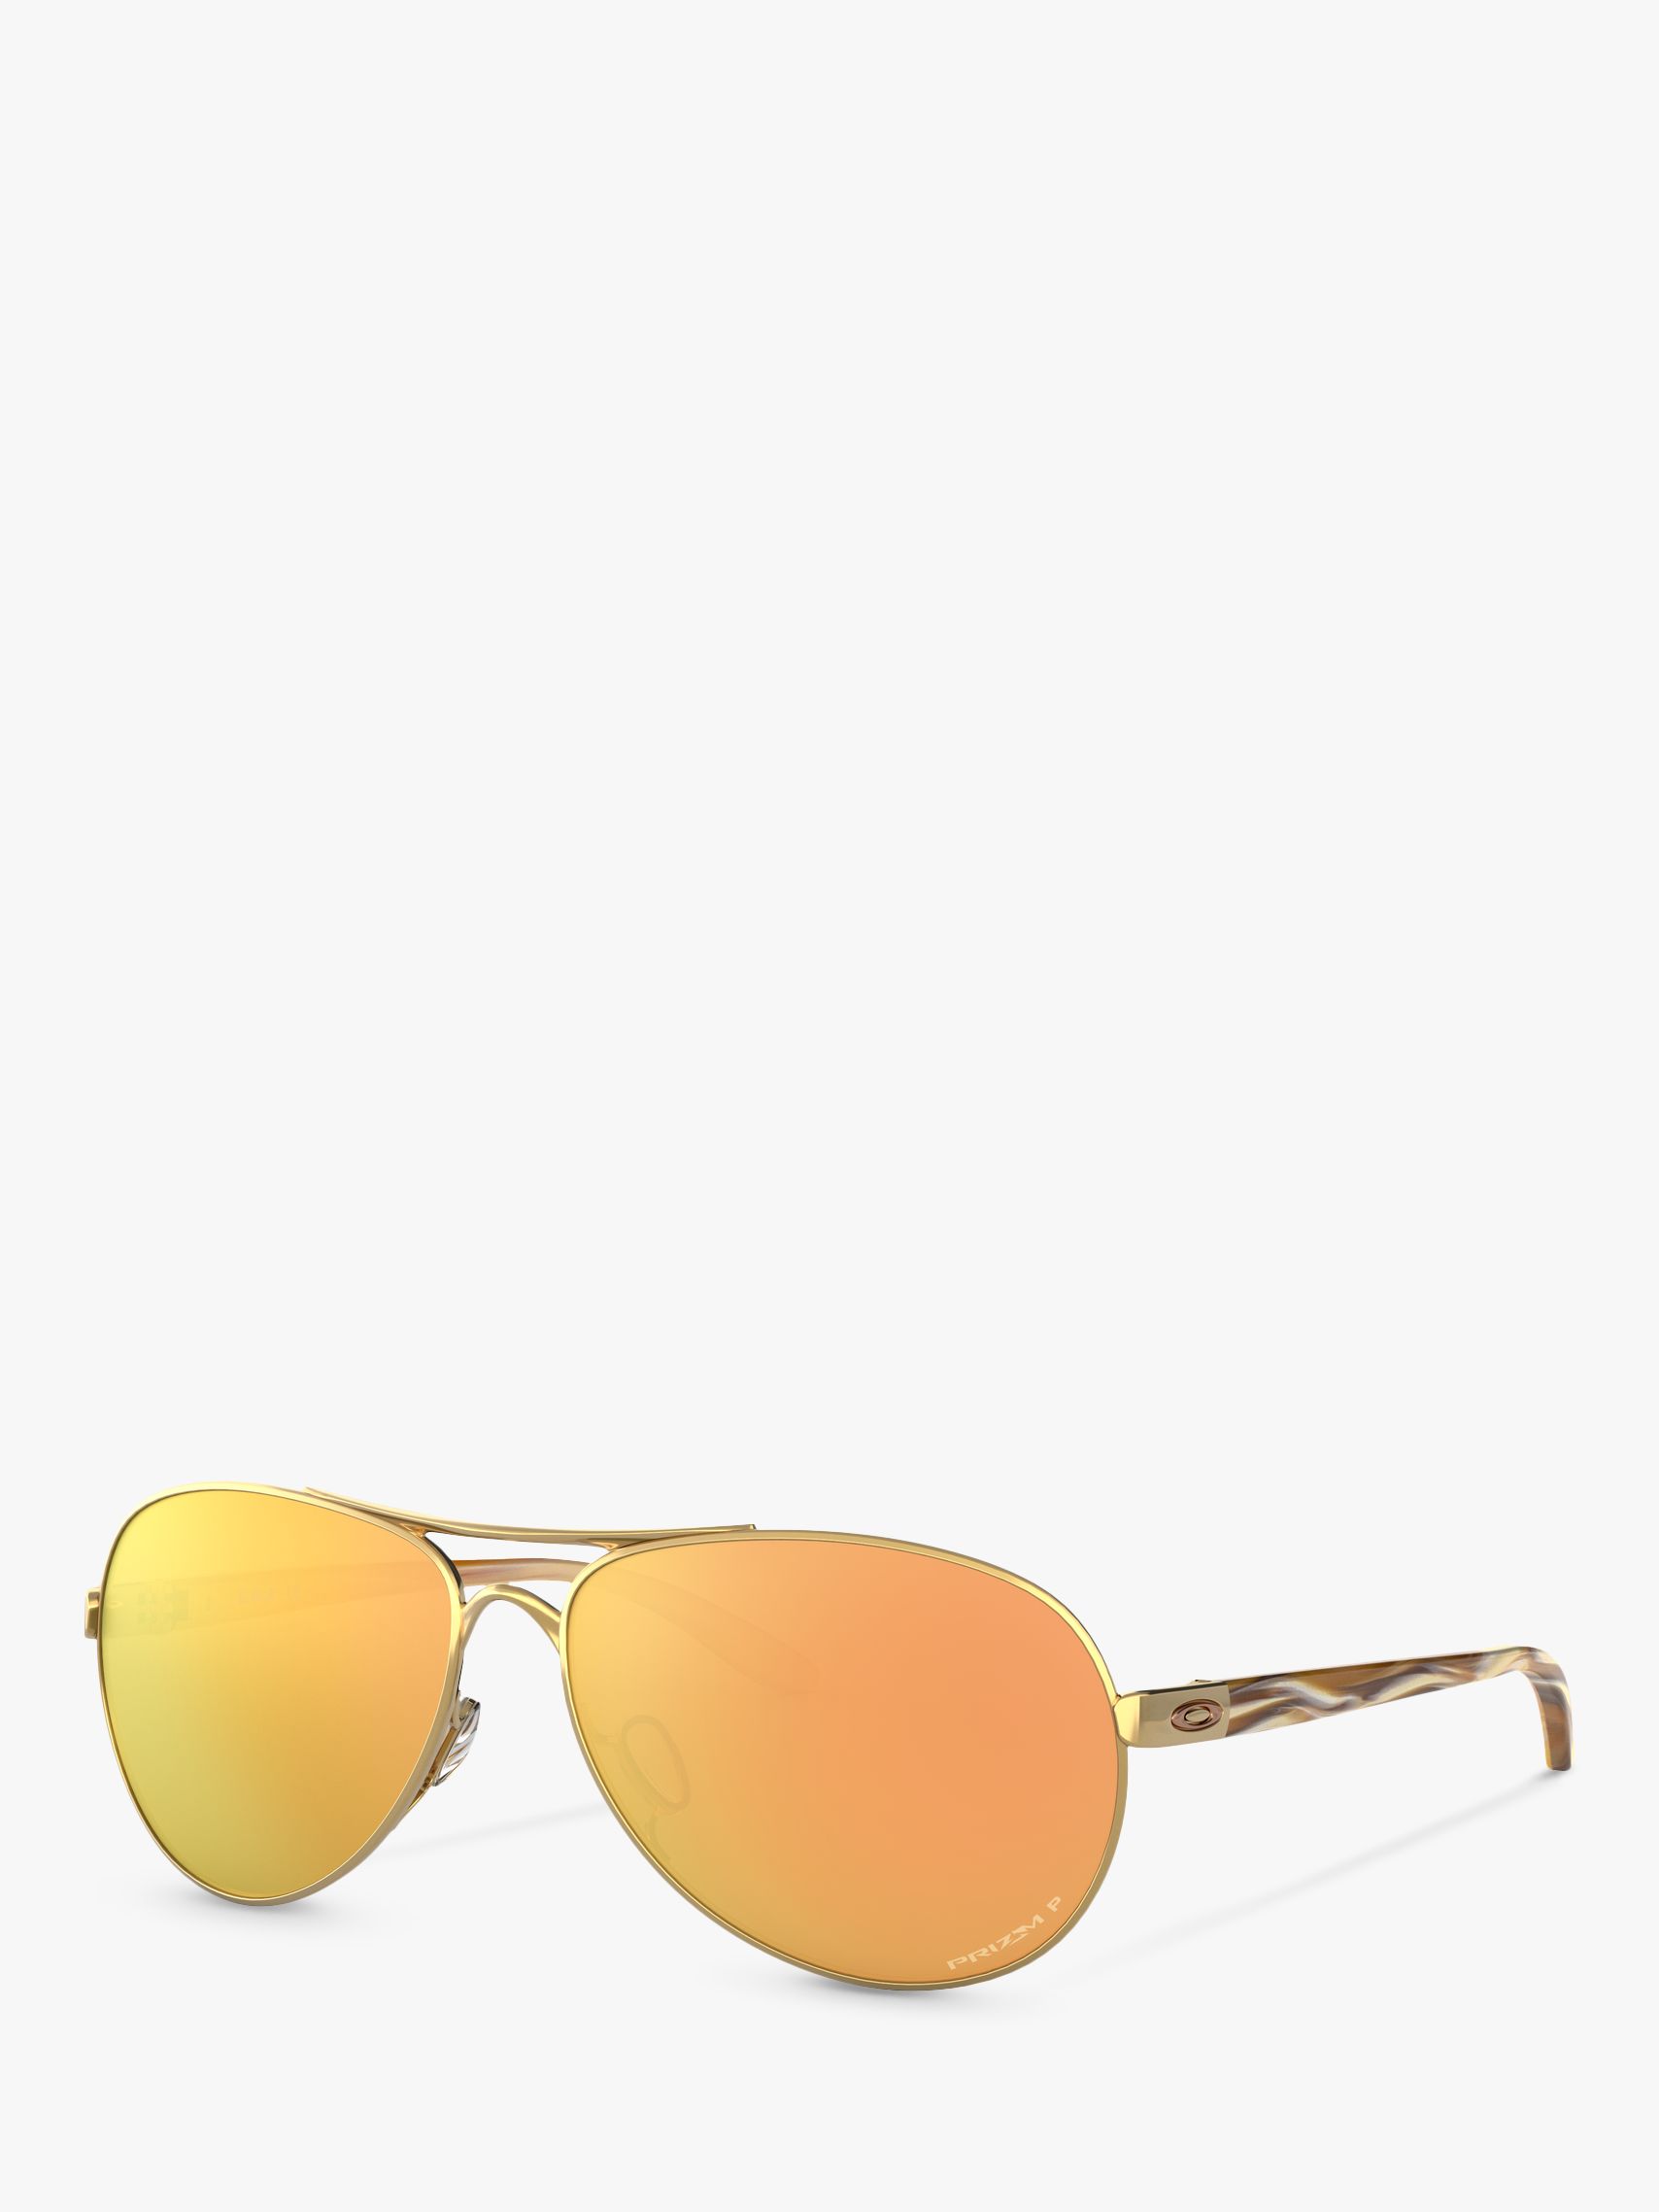 oakley women's feedback polarized sunglasses